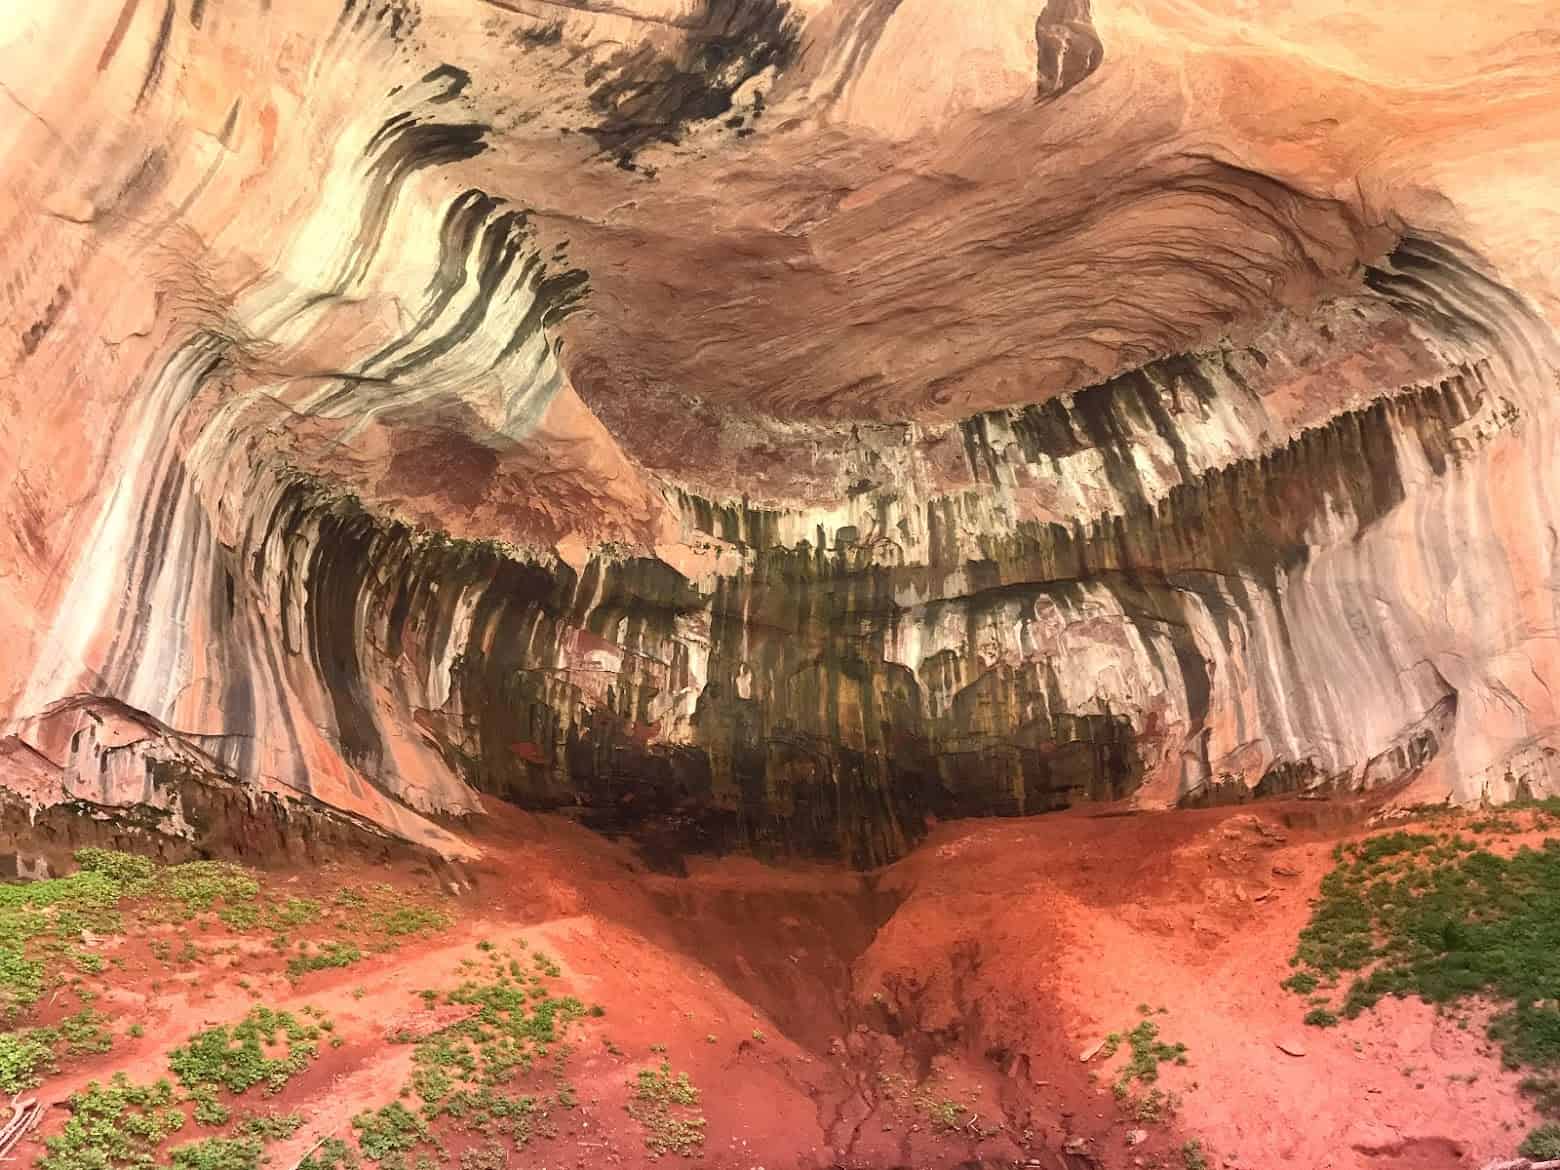 Visit the Awe-Inspiring Kolob Canyons of Zion